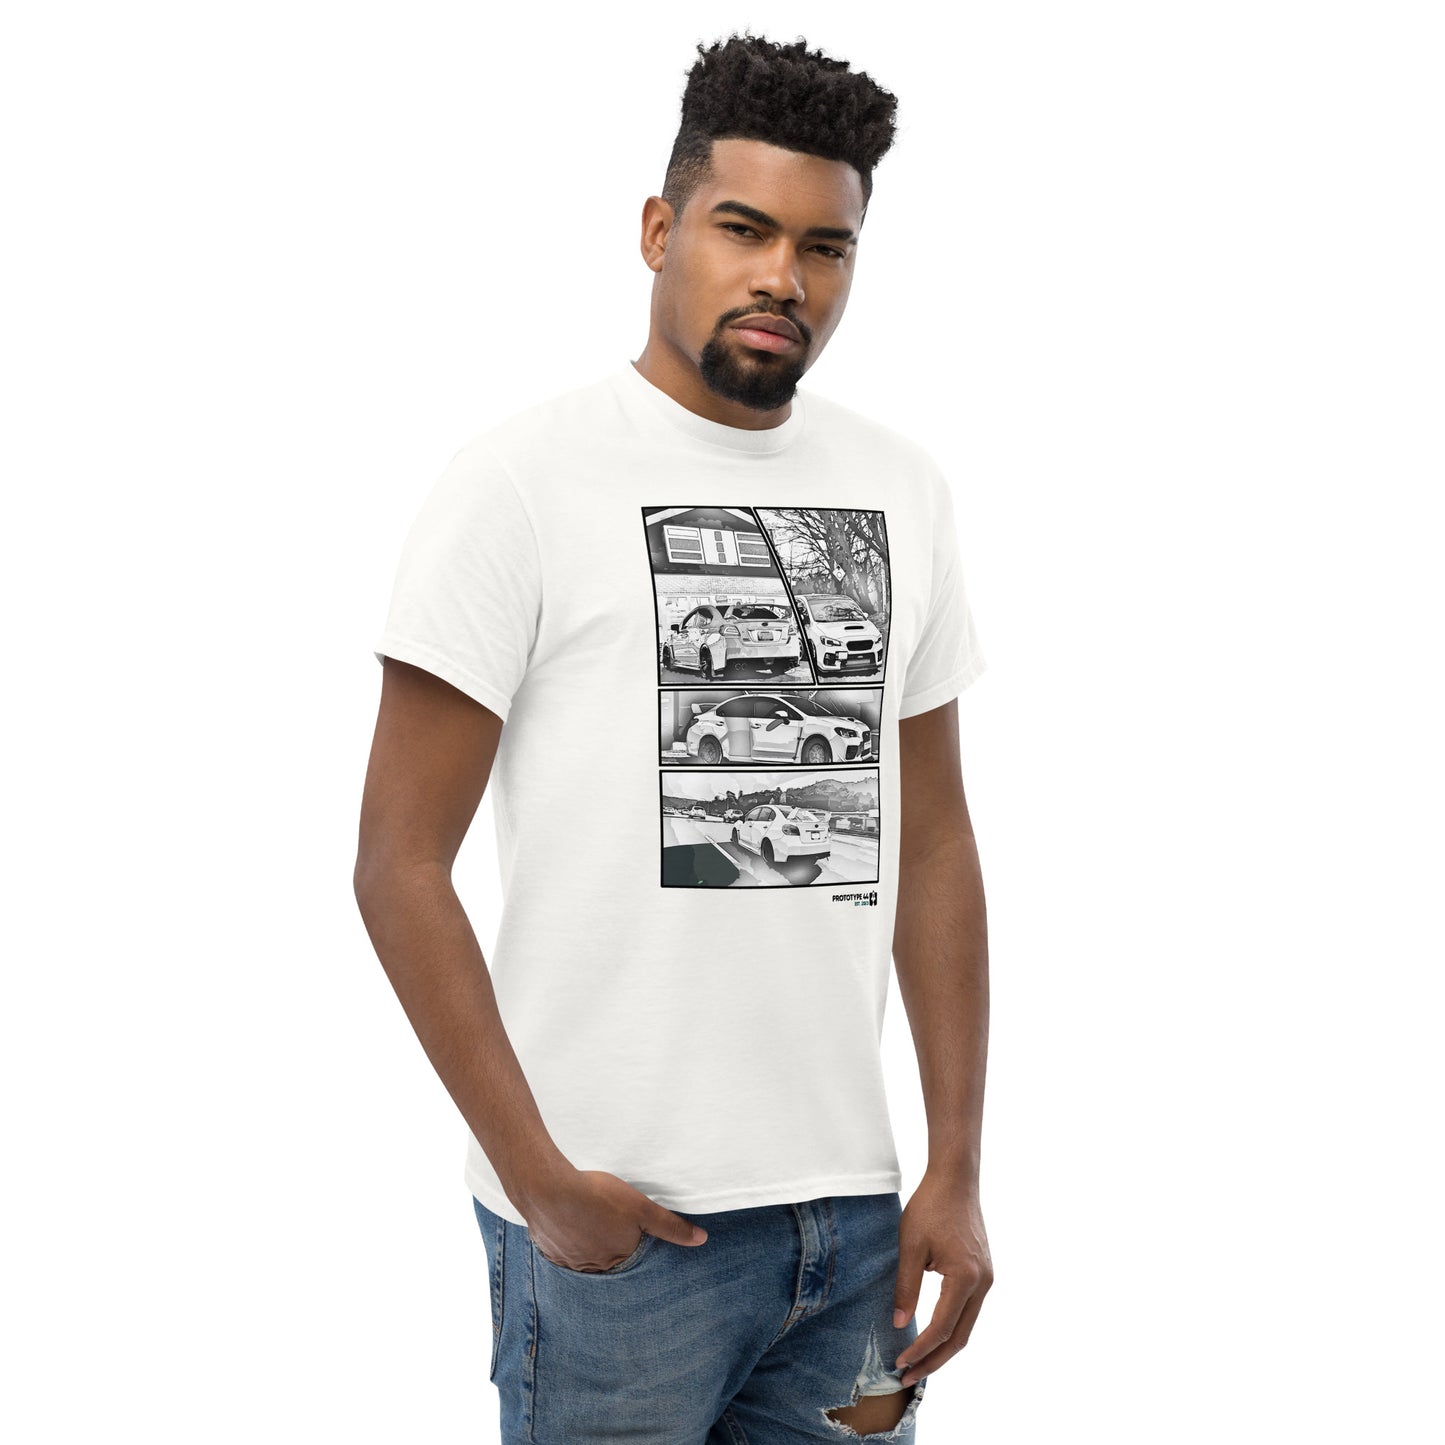 Man looking serious while wearing Subaru WRX STi T-shirt